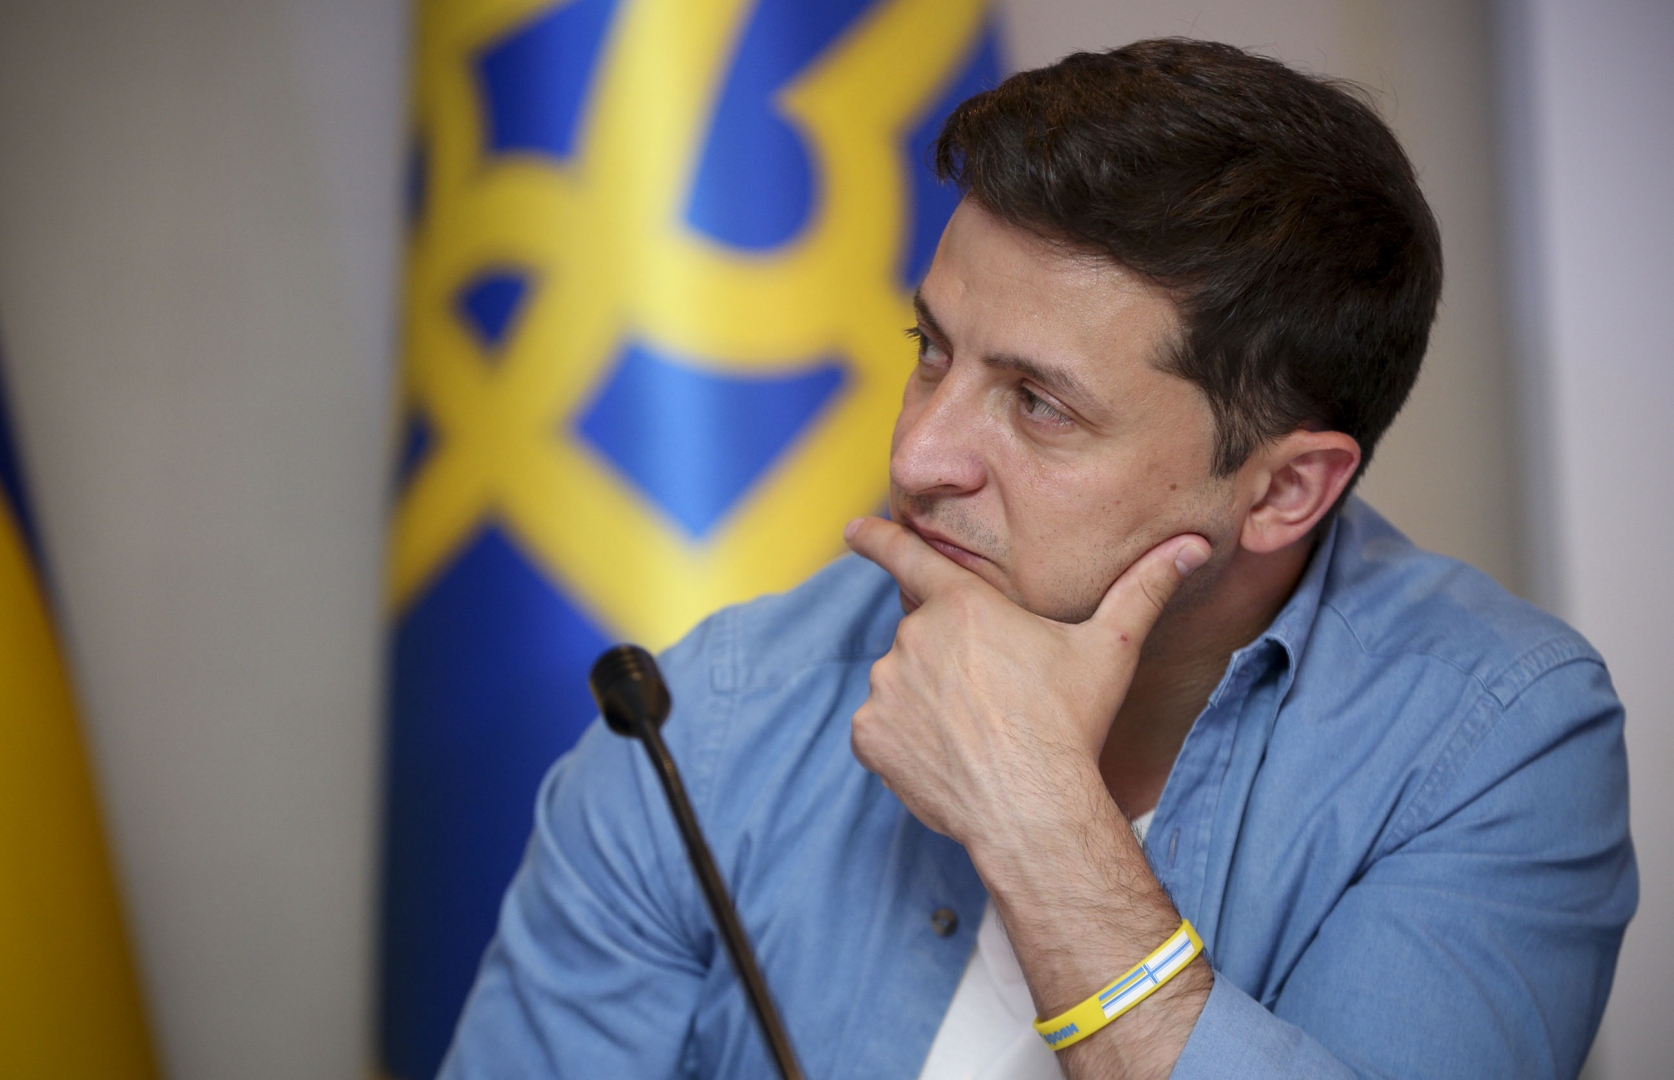 Зеленский назвал угрозой бизнес, связанный с Донбассом и Крымом